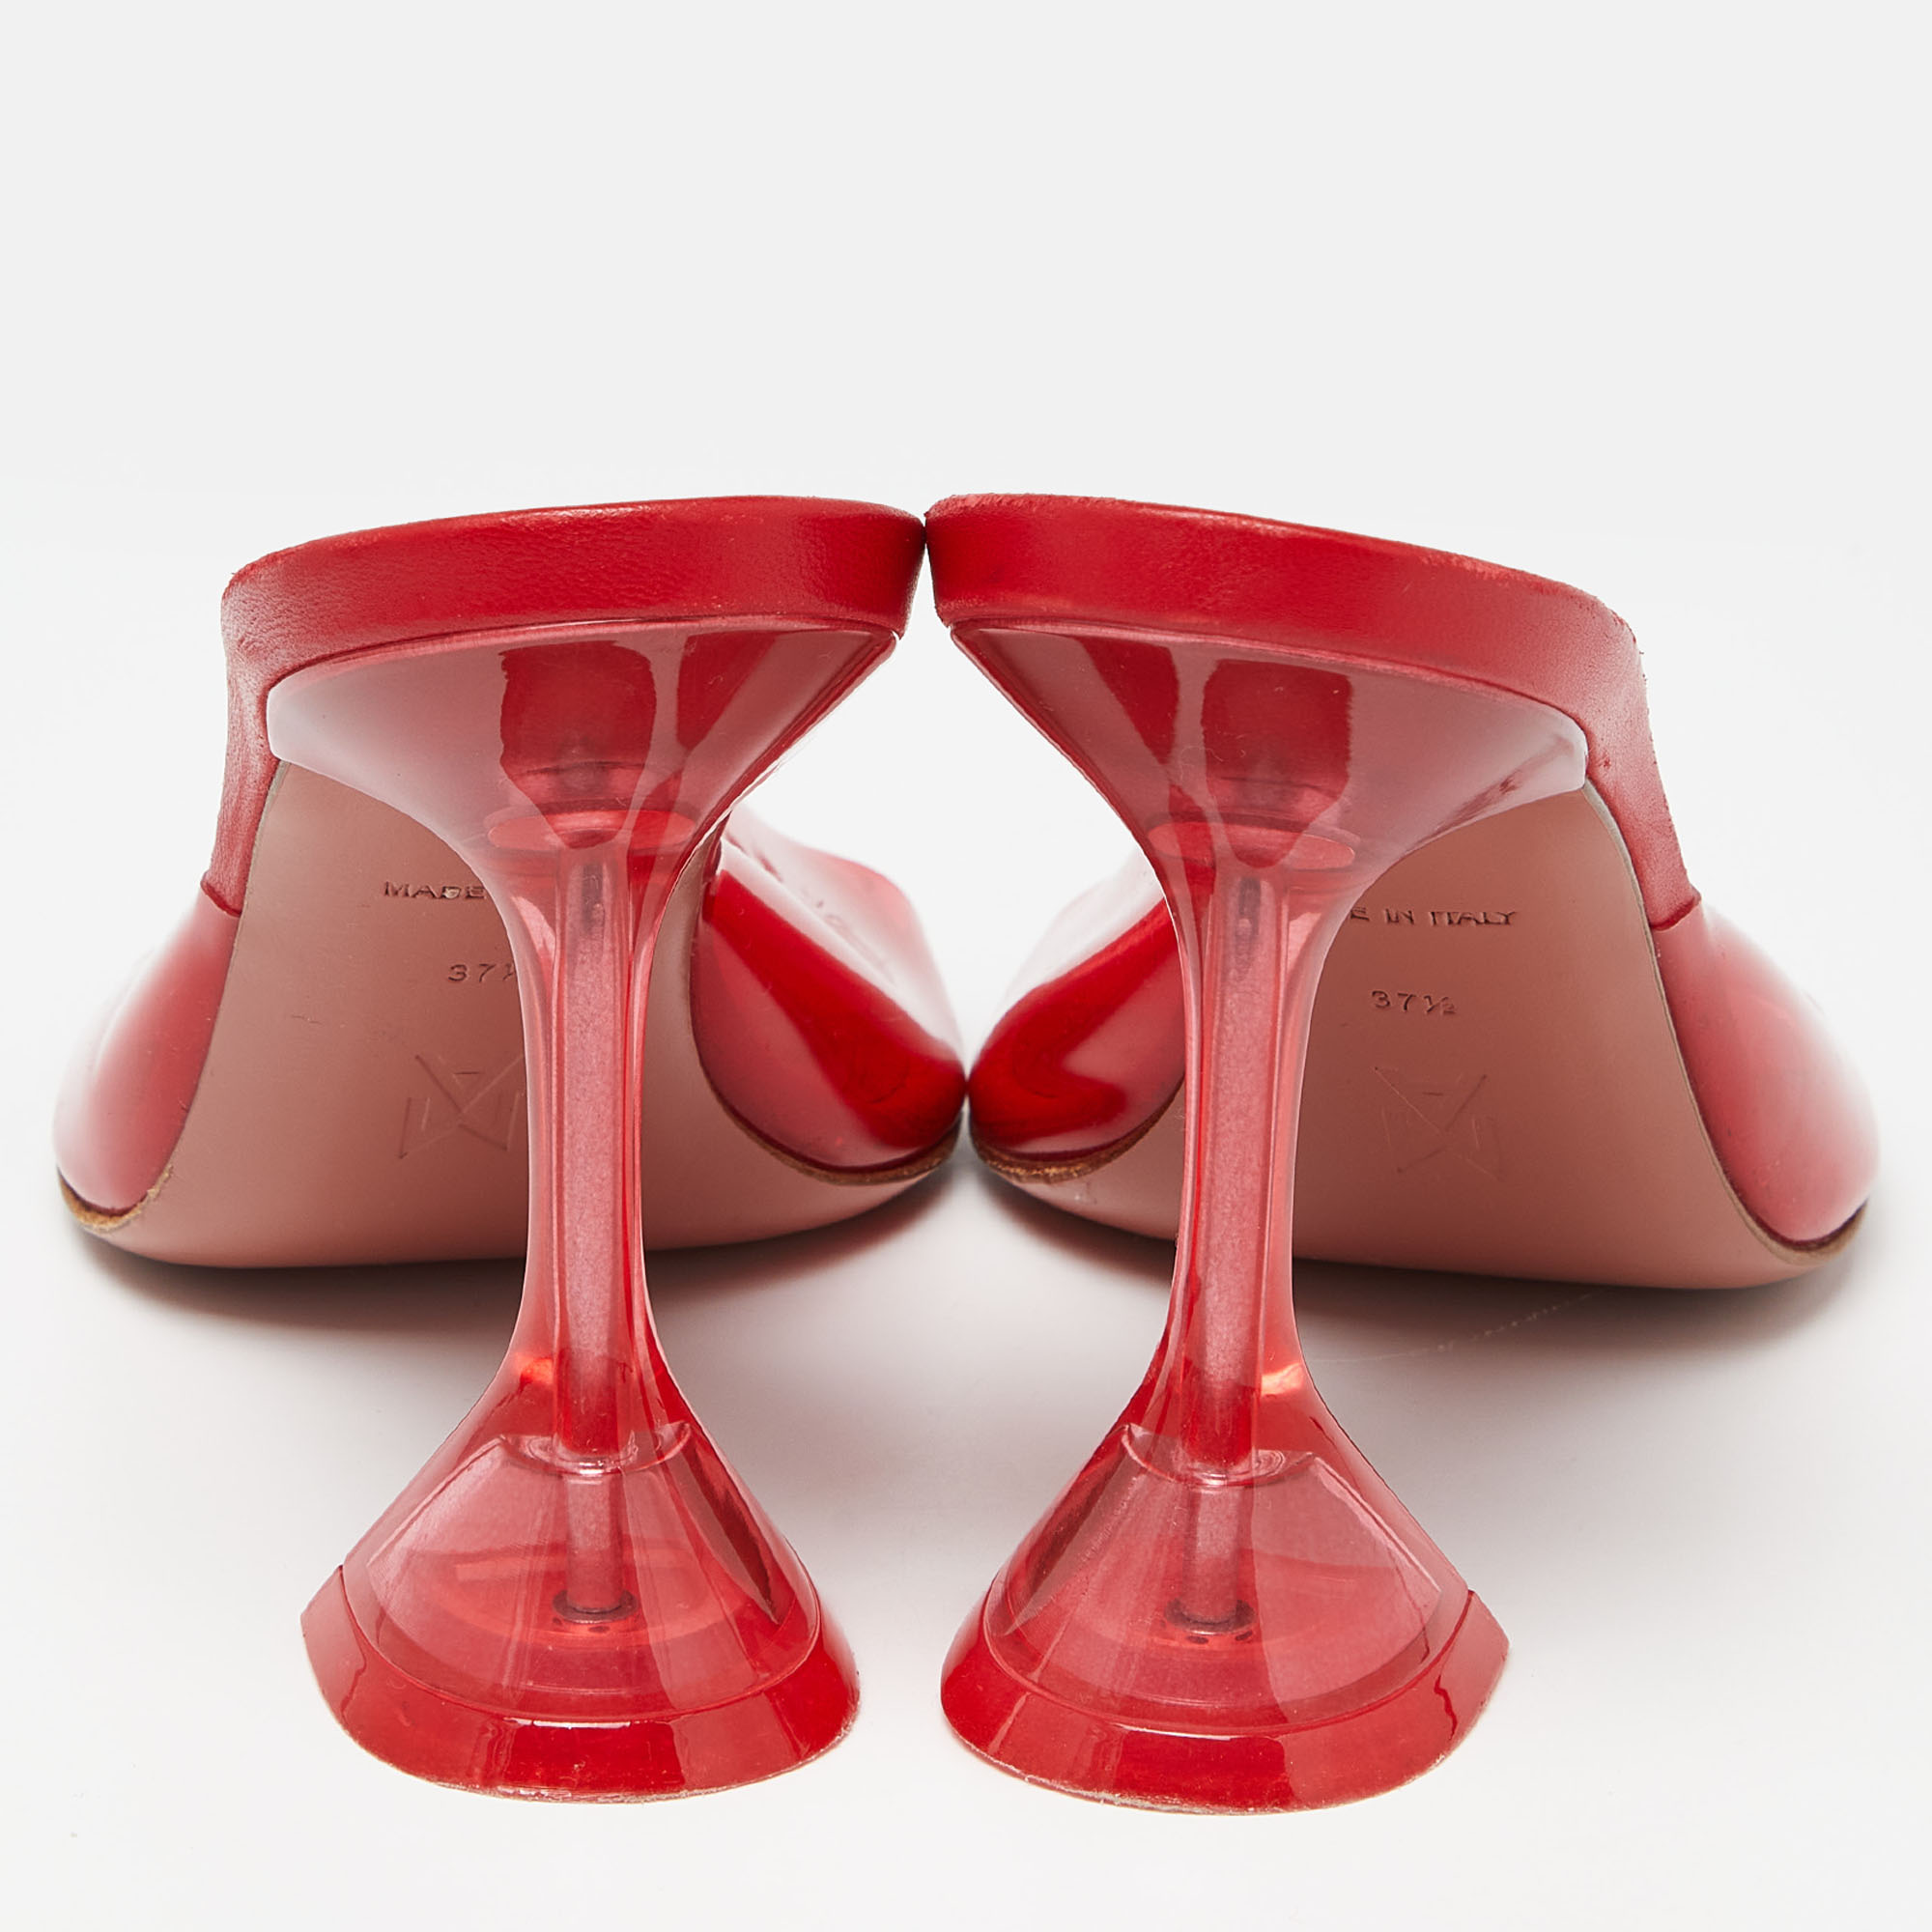 Amina Muaddi Red PVC Lupita Slide Sandals Size 37.5